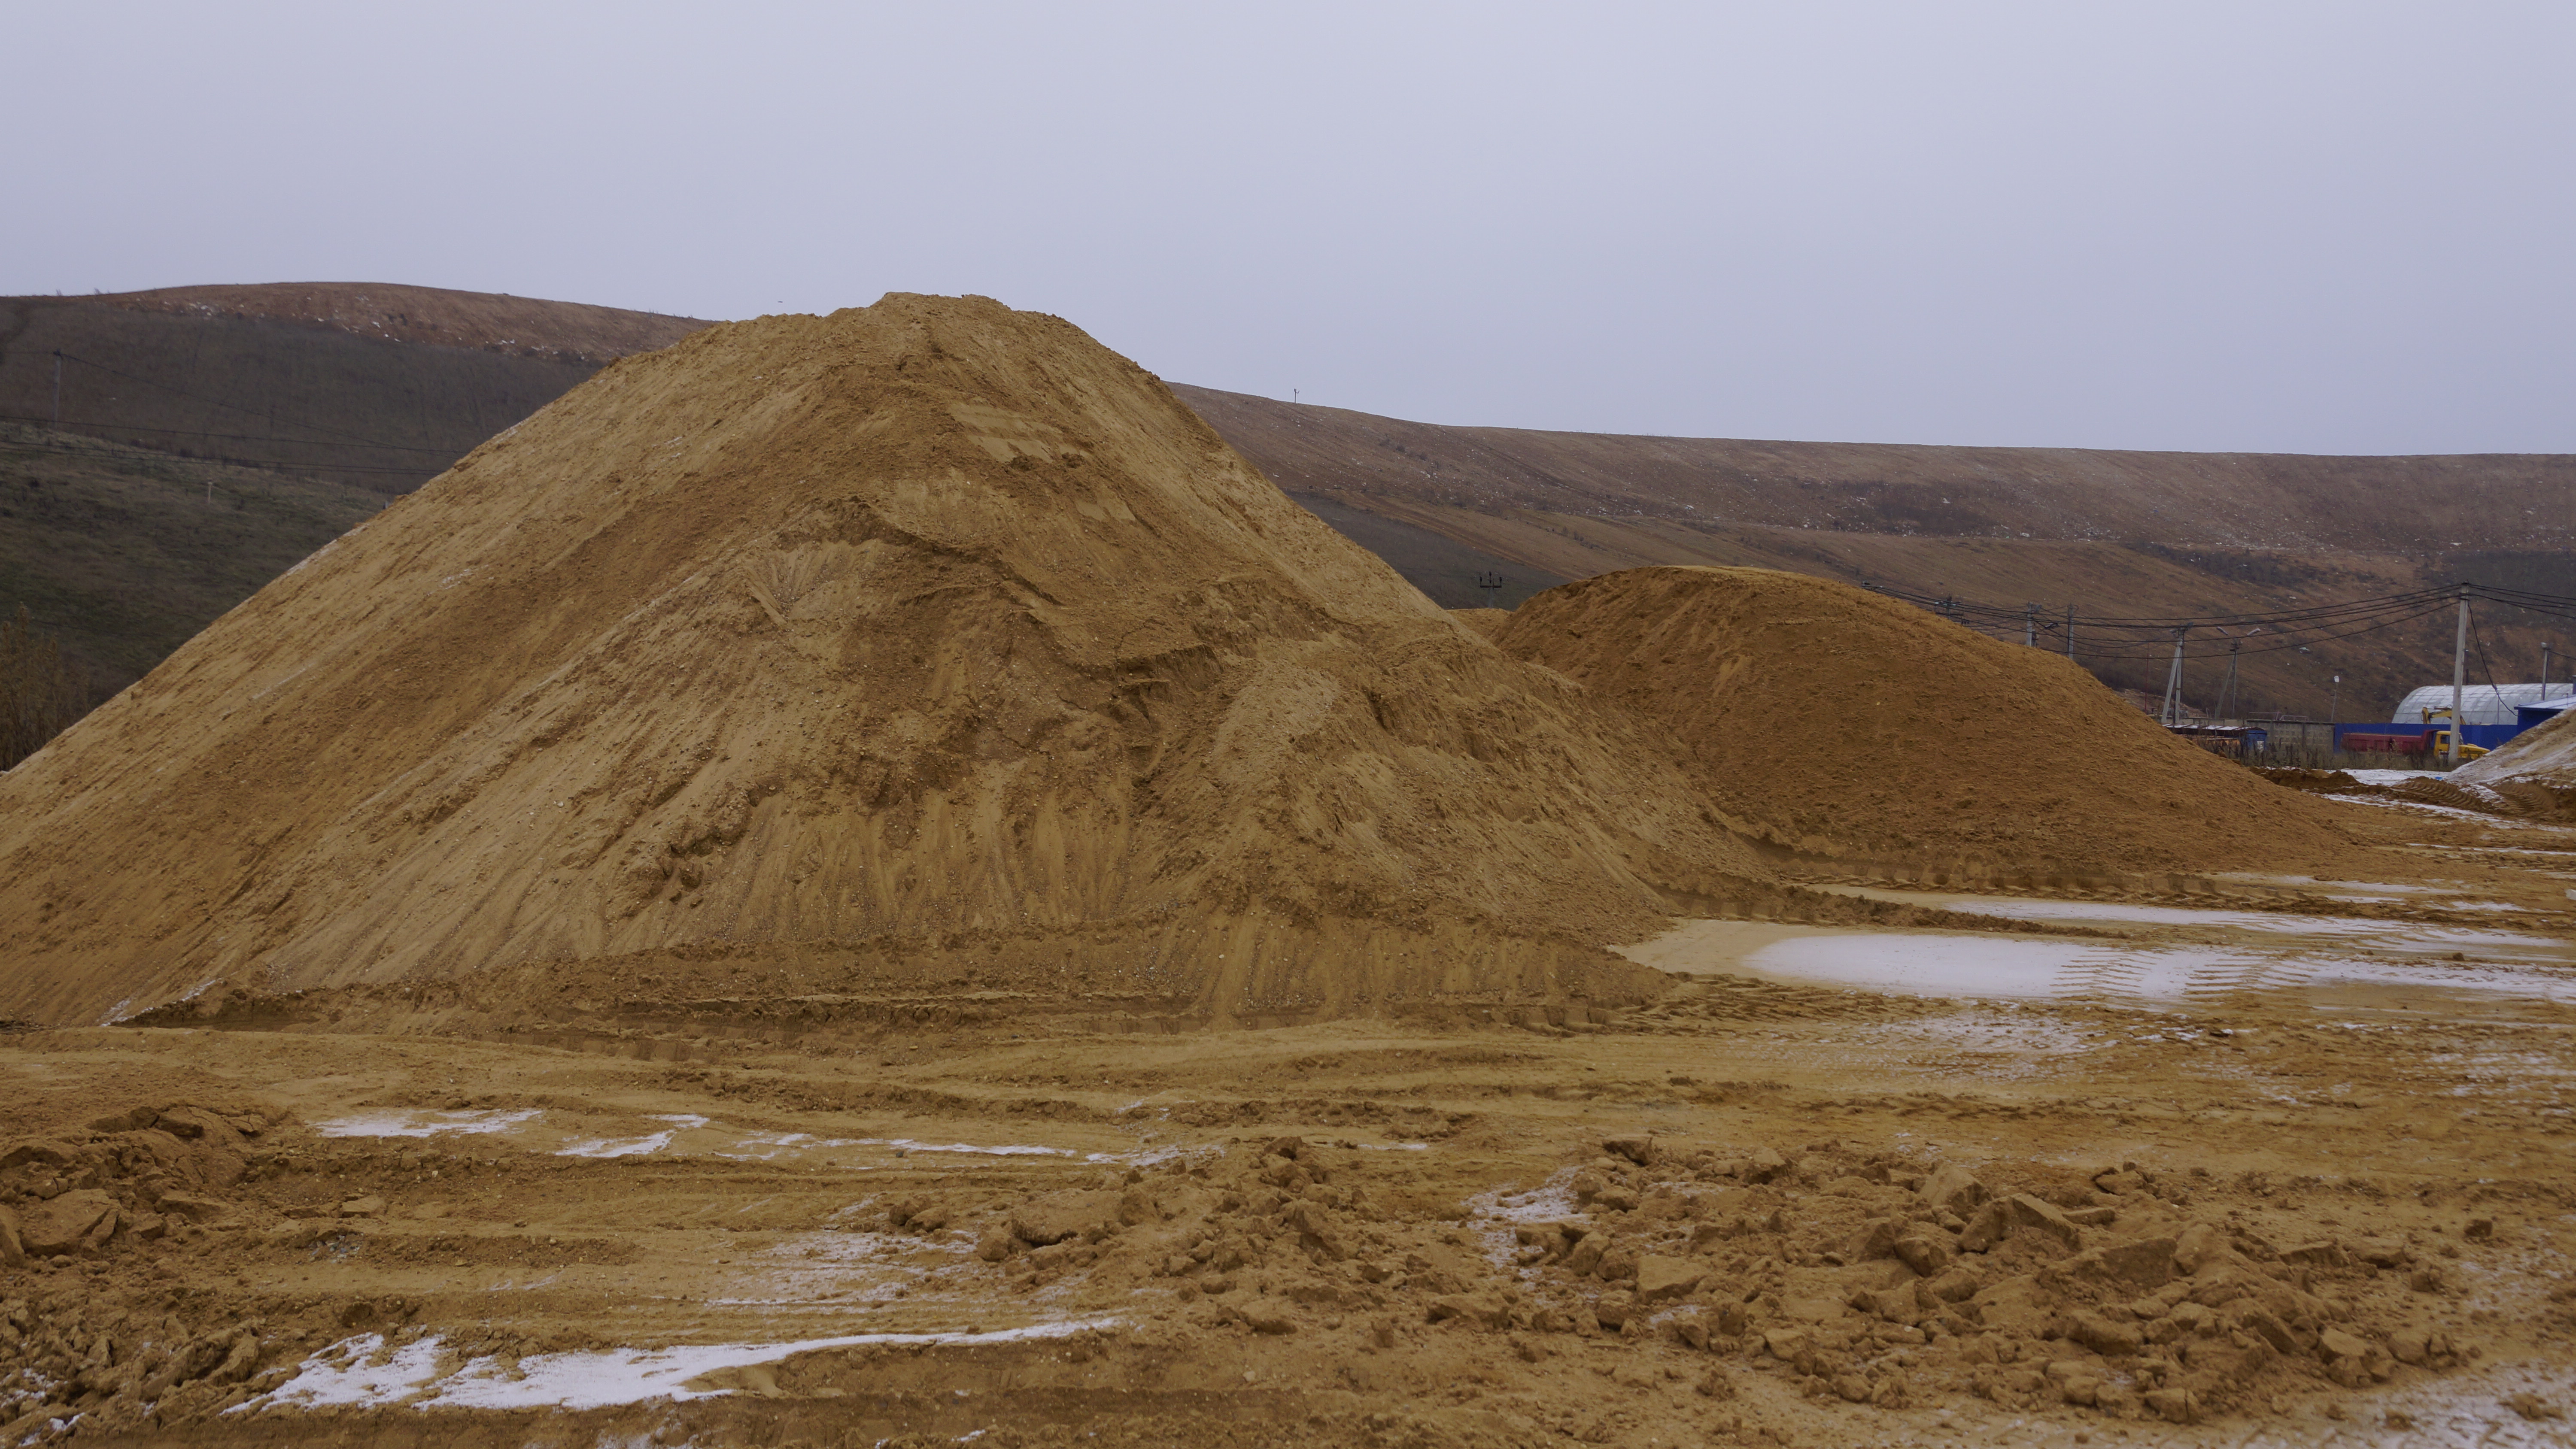  Ментовский СОЛНЕЧНОГОРСК или пустыня Сахара Федерального масштаба  - фото 32